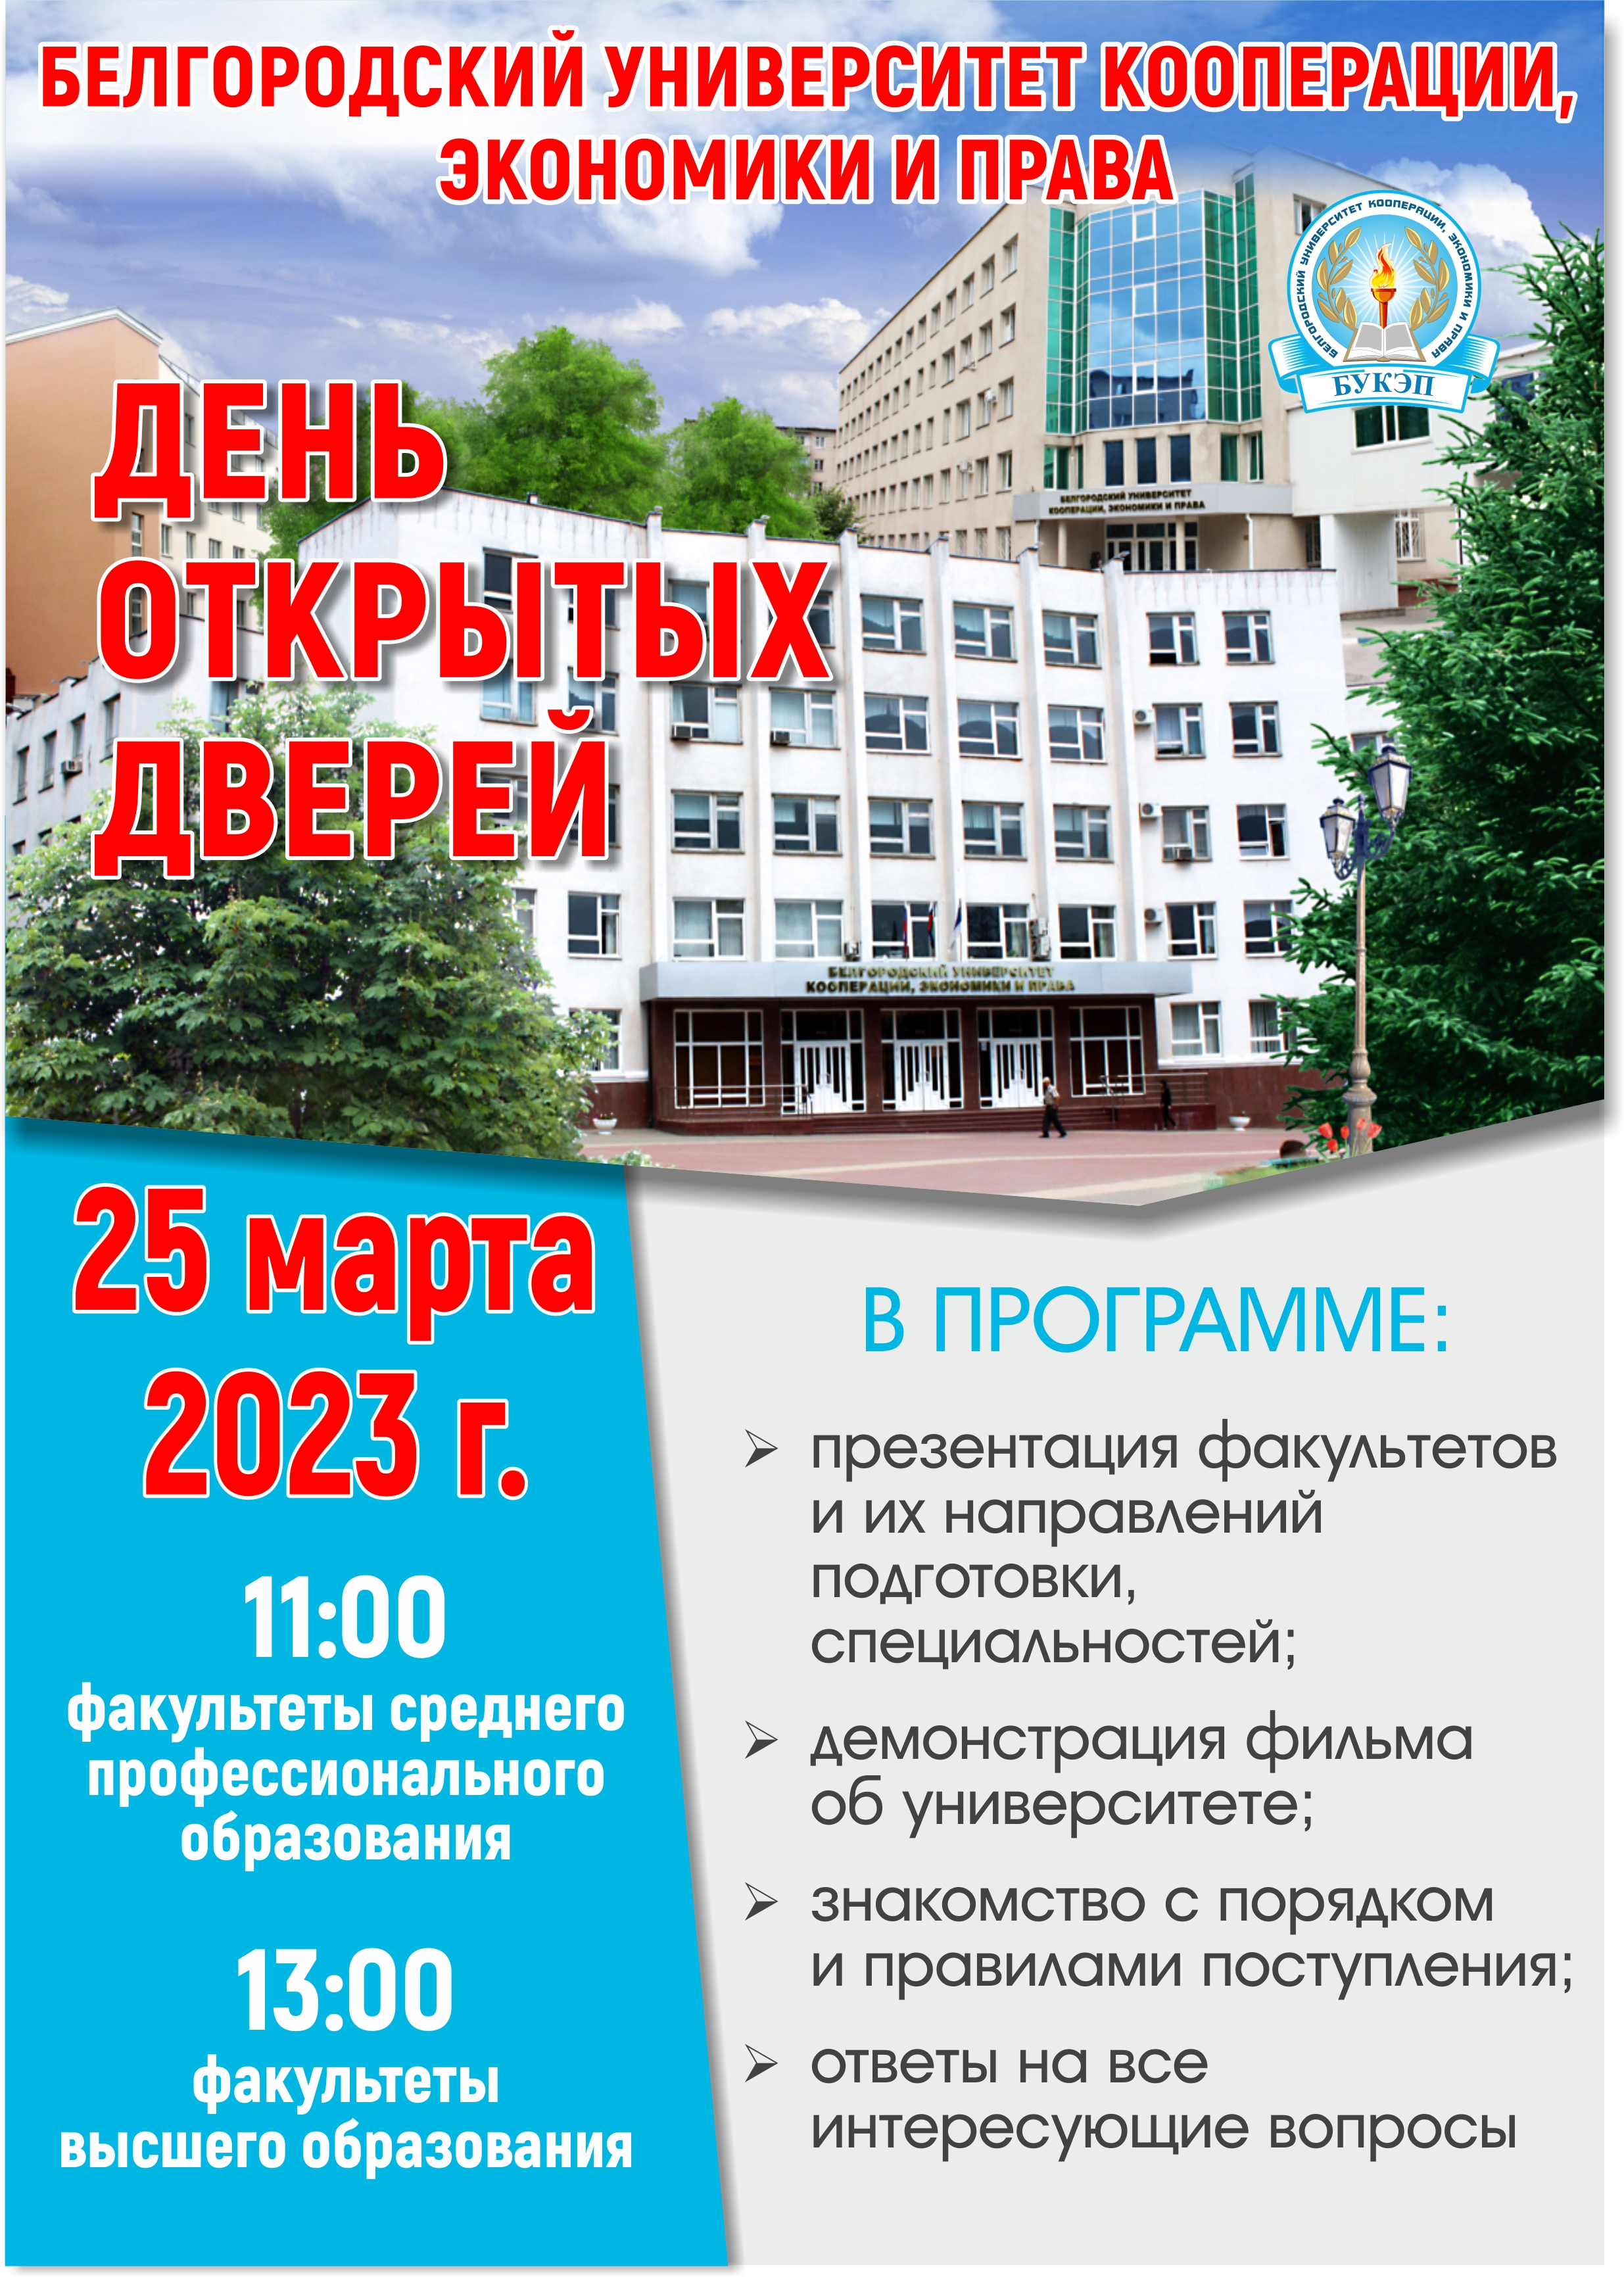 День открытых дверей 25 марта 2023 года. В  «Белгородском университете кооперации, экономики и права».